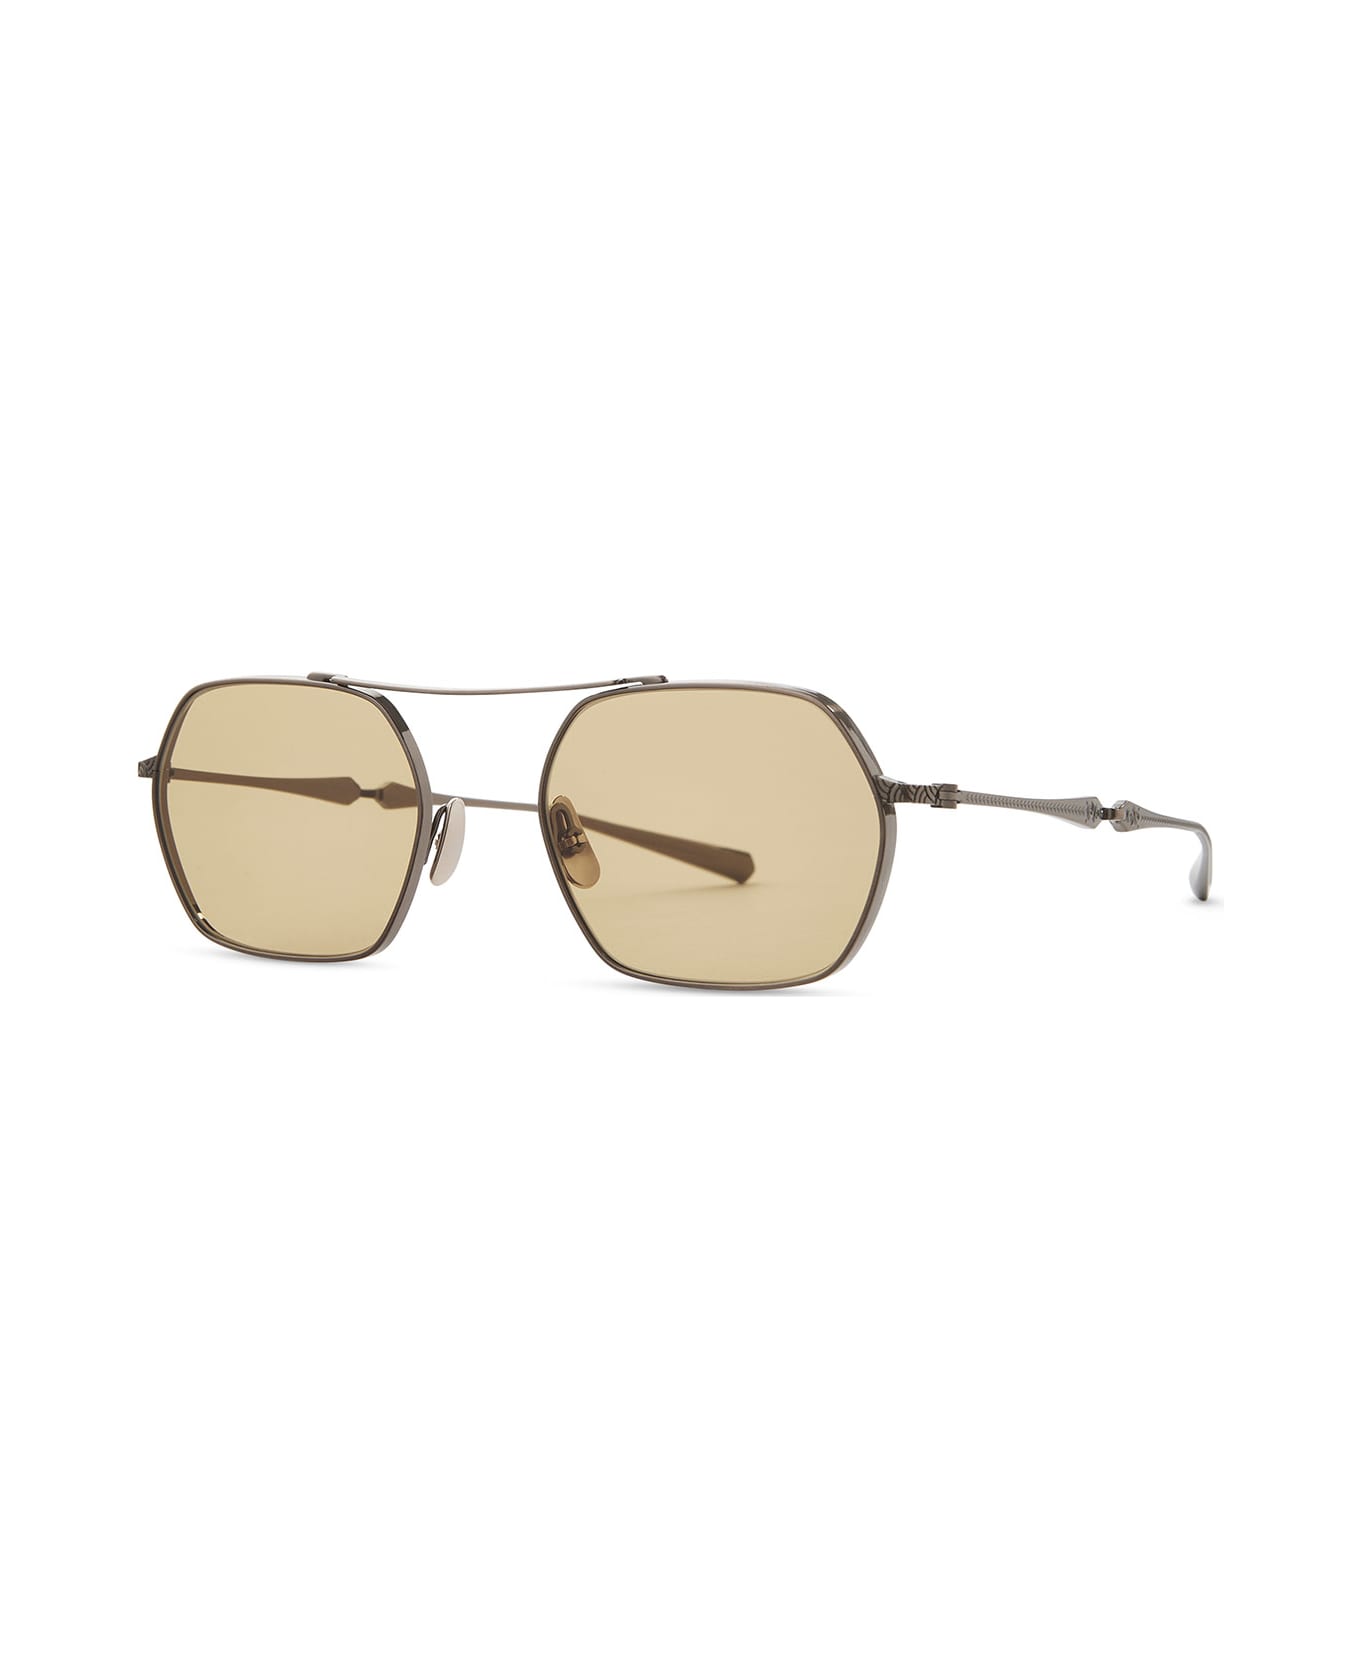 Mr. Leight Ryder S 12k White Gold Sunglasses -  12K White Gold サングラス